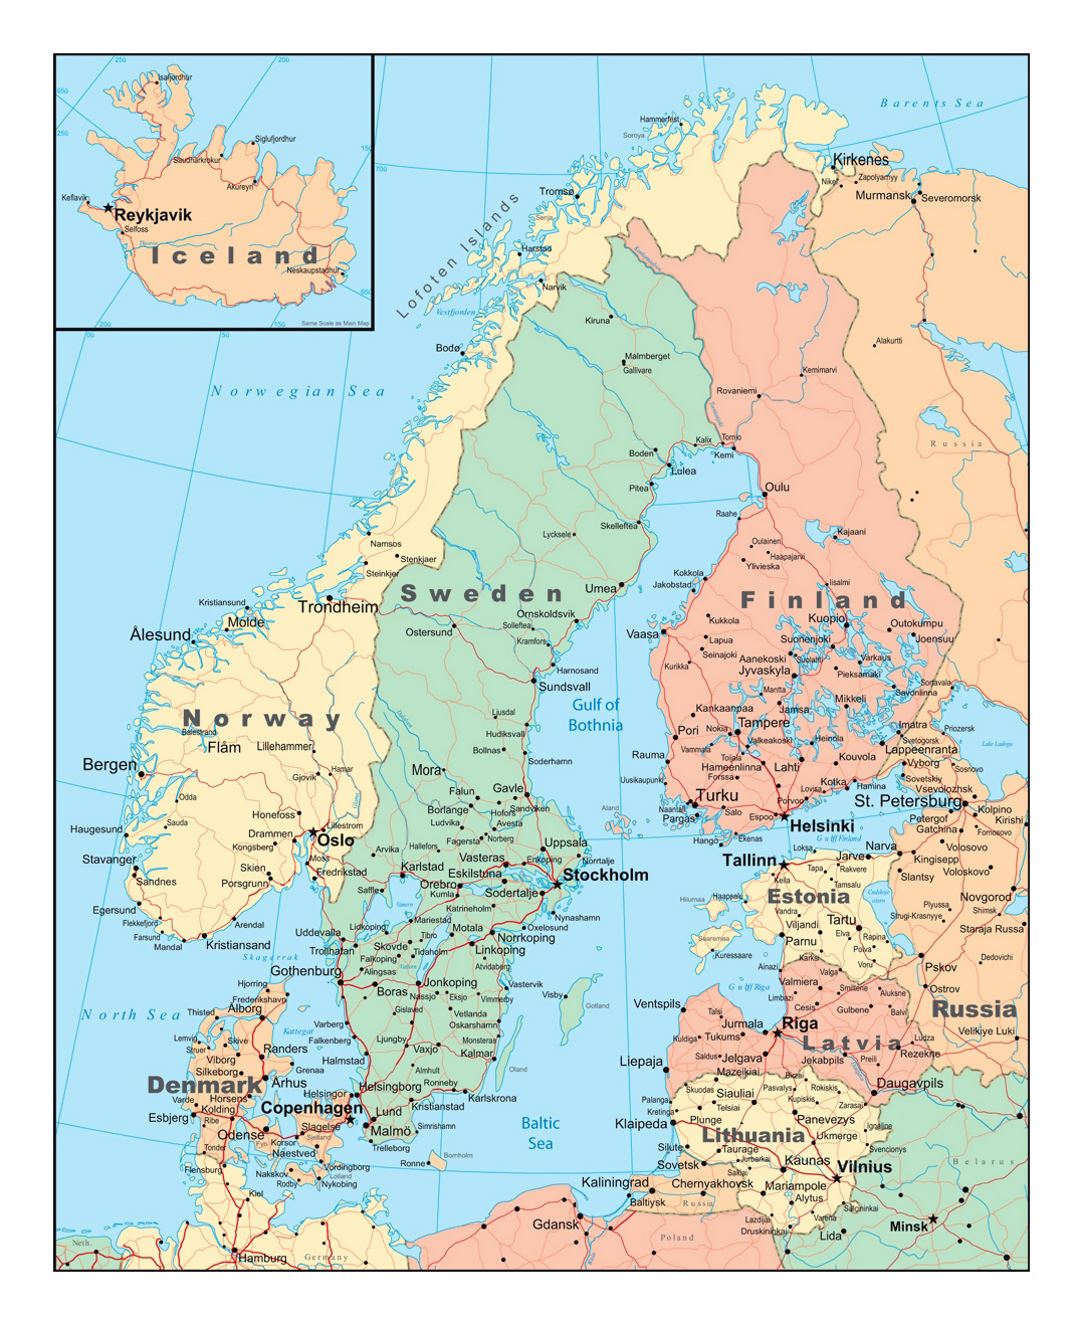 Mapa político de Escandinavia con carreteras y ciudades